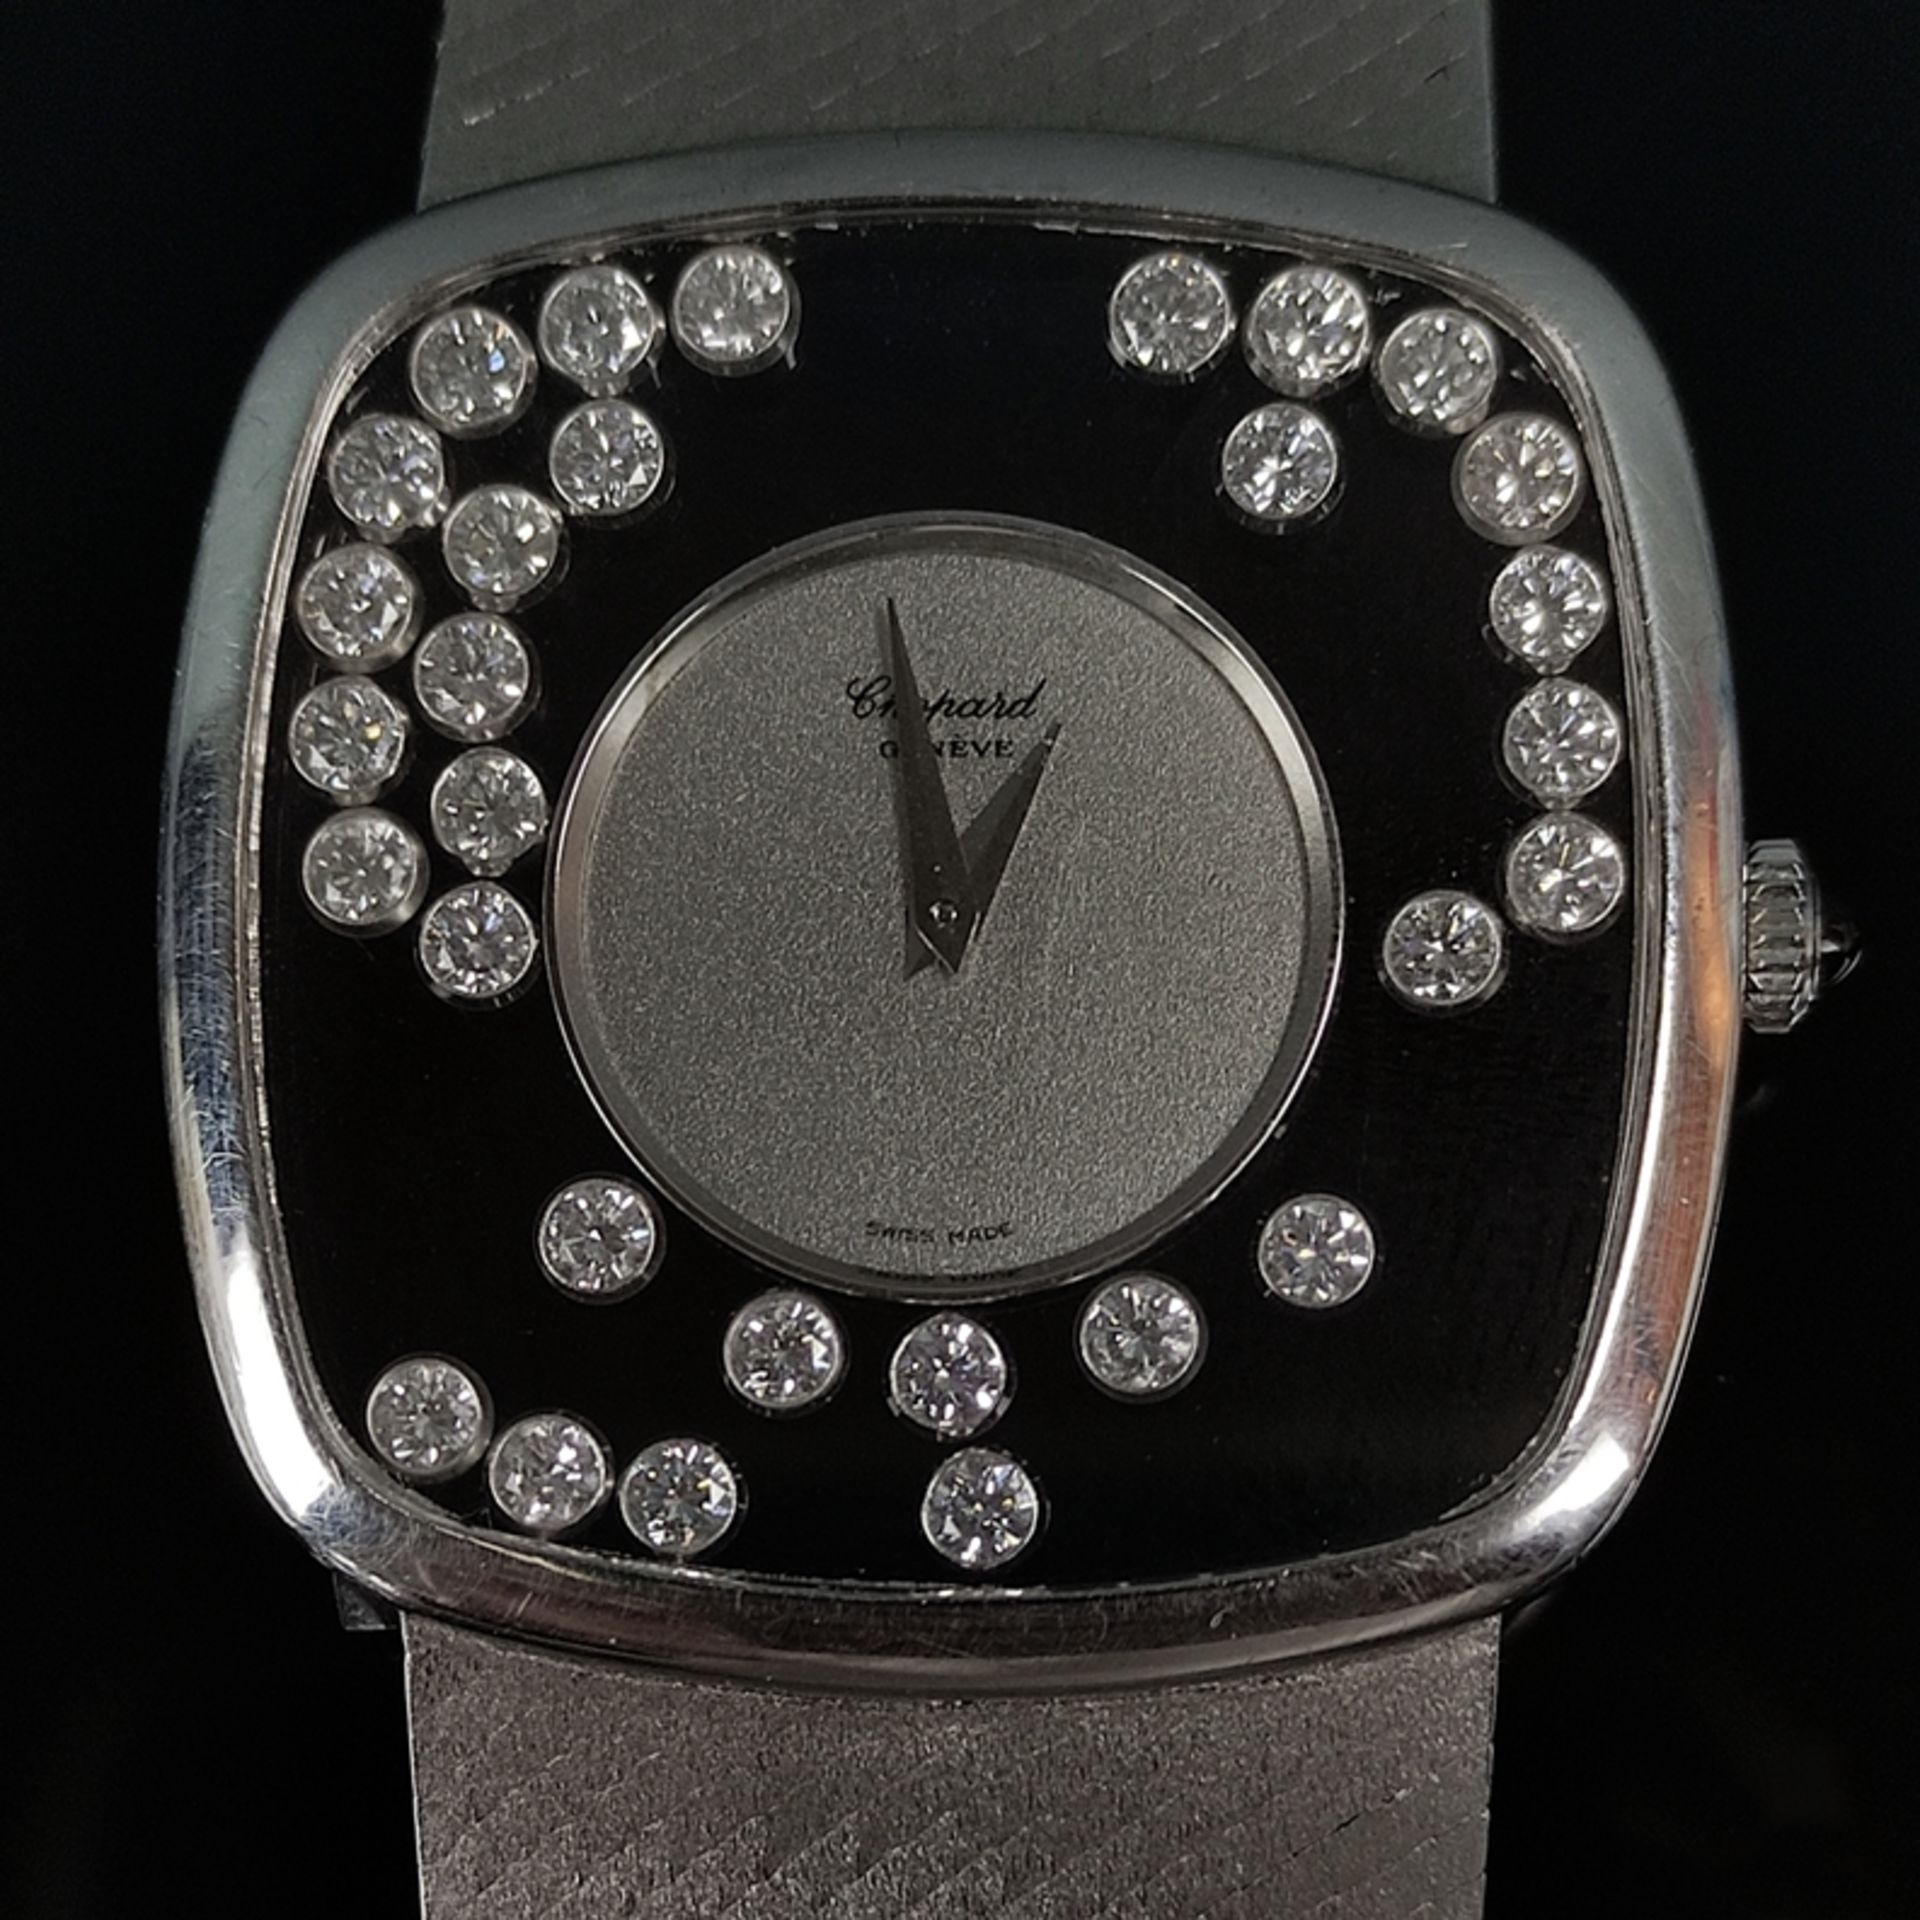 Armbanduhr, Chopard, Happy Diamonds mit 30 Diamanten, Referenz 2106, quadratisches Gehäuse mit abge - Bild 2 aus 7